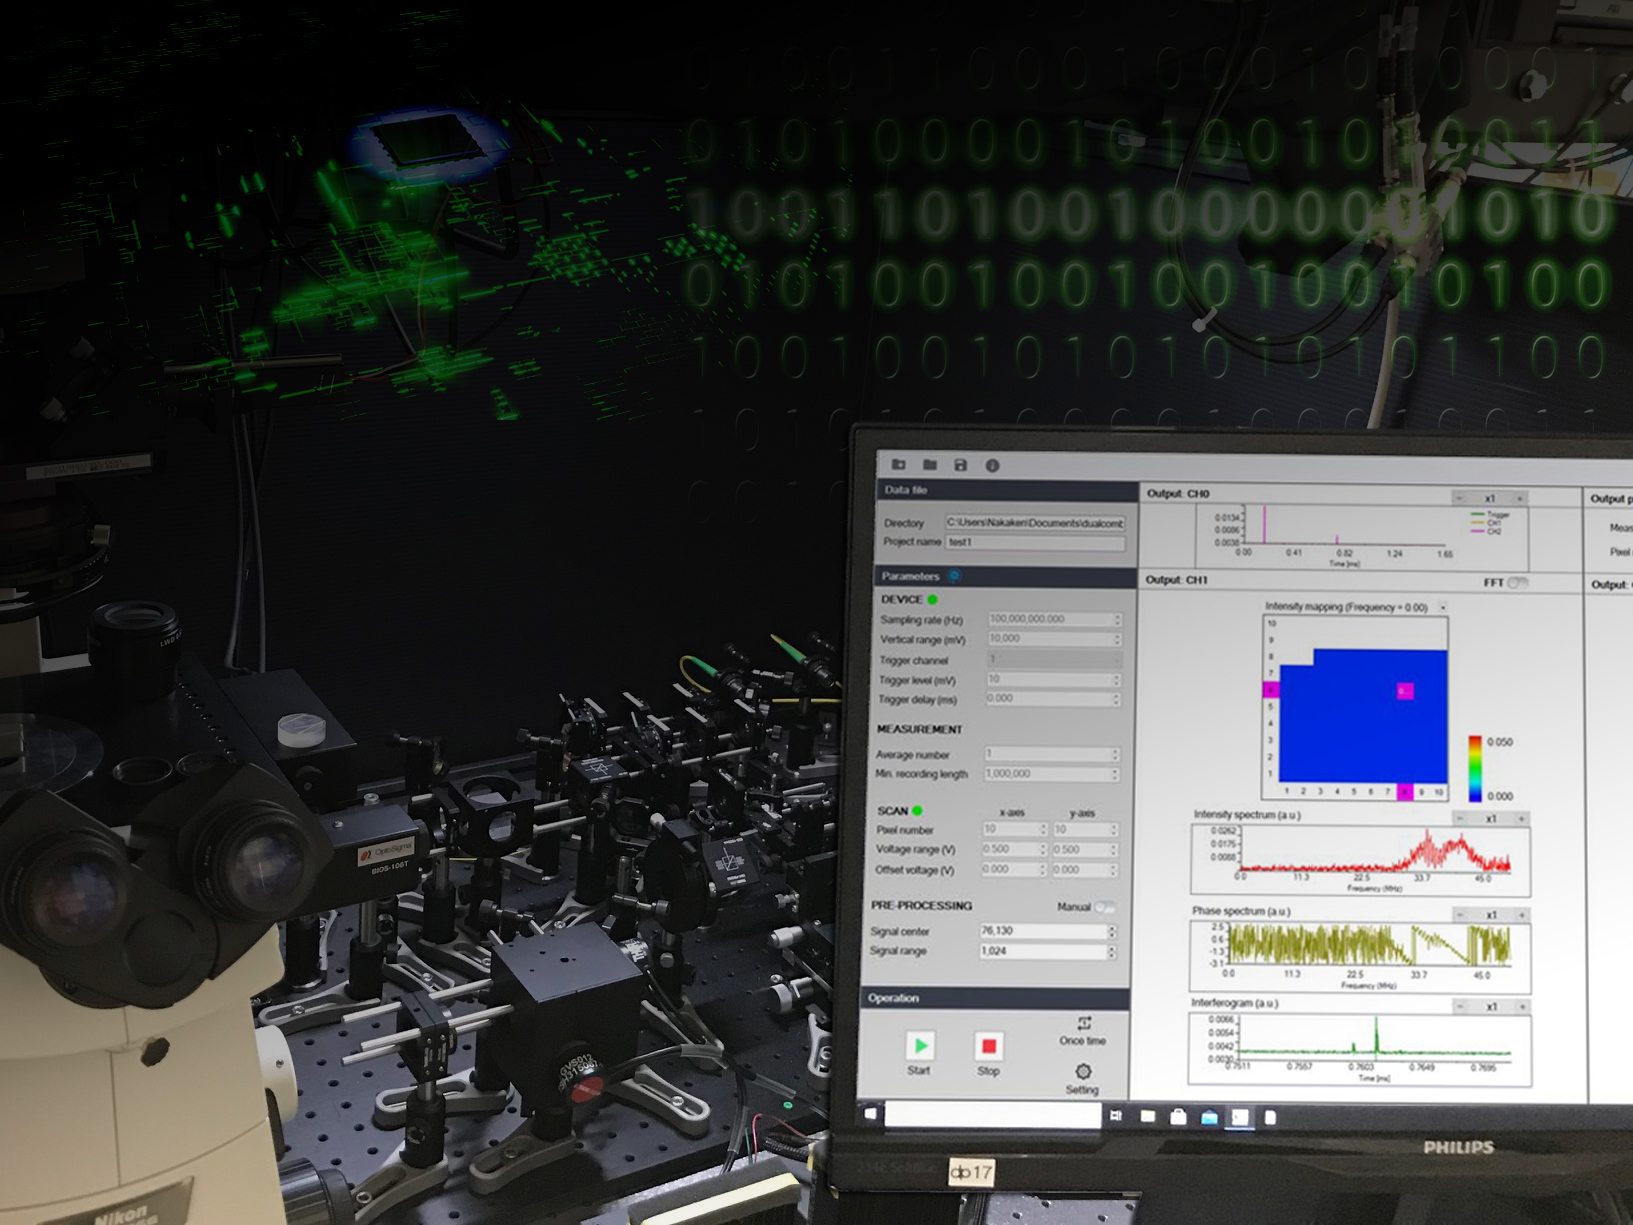 【ソフトウェア開発事例】 高速並列演算処理を用いた光コム顕微鏡の高速化